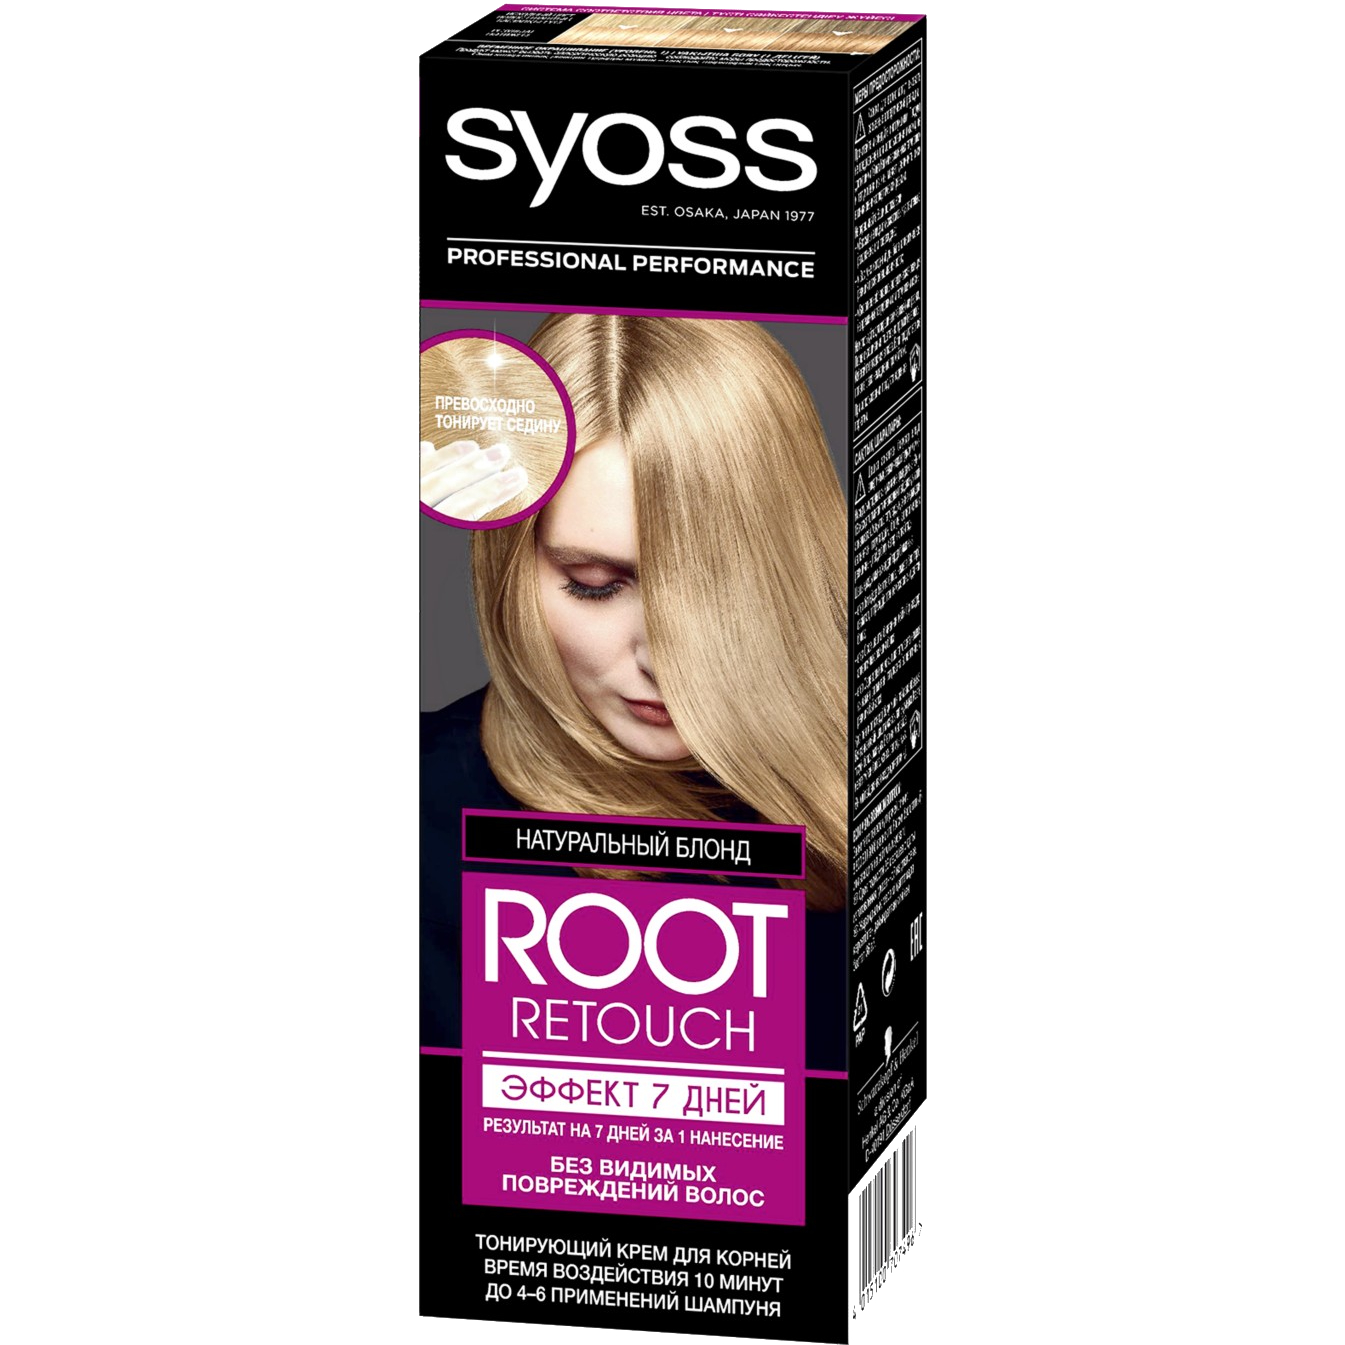 Крем для волос Syoss Root Retoucher тонирующий Эффект 7 дней оттенок 8.0 Натуральный Блонд, 60 мл крем для волос syoss root retoucher тонирующий эффект 7 дней оттенок 1 0 чёрный 60 мл